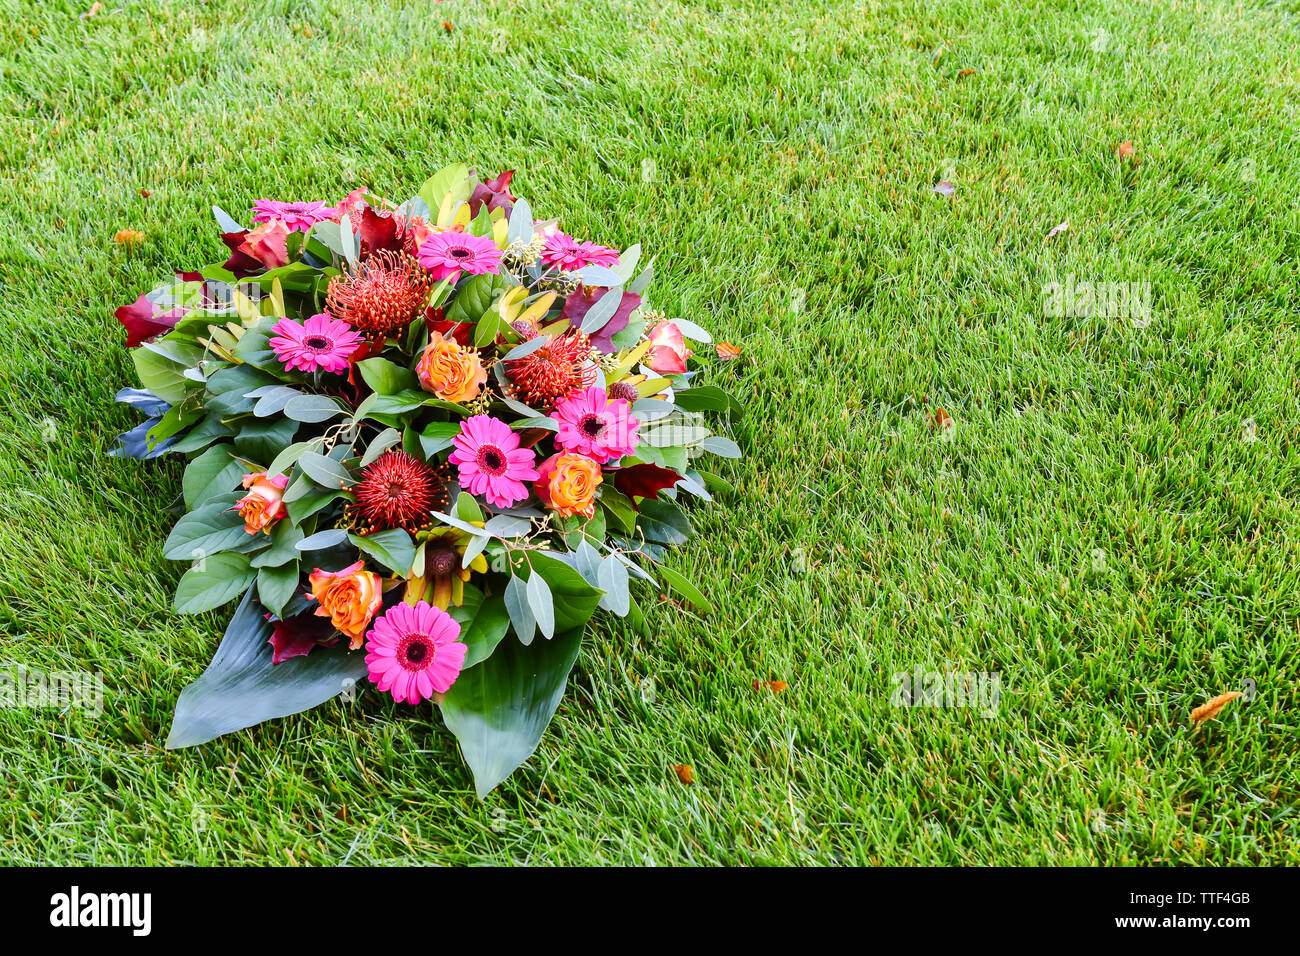 Rosa und Orange farbige Blume Anordnung auf Rasen. Allerheiligen Blumenarrangements, Blumen für das Grab und Bestattung. Blumige Hintergründe für die Trauer Stockfoto